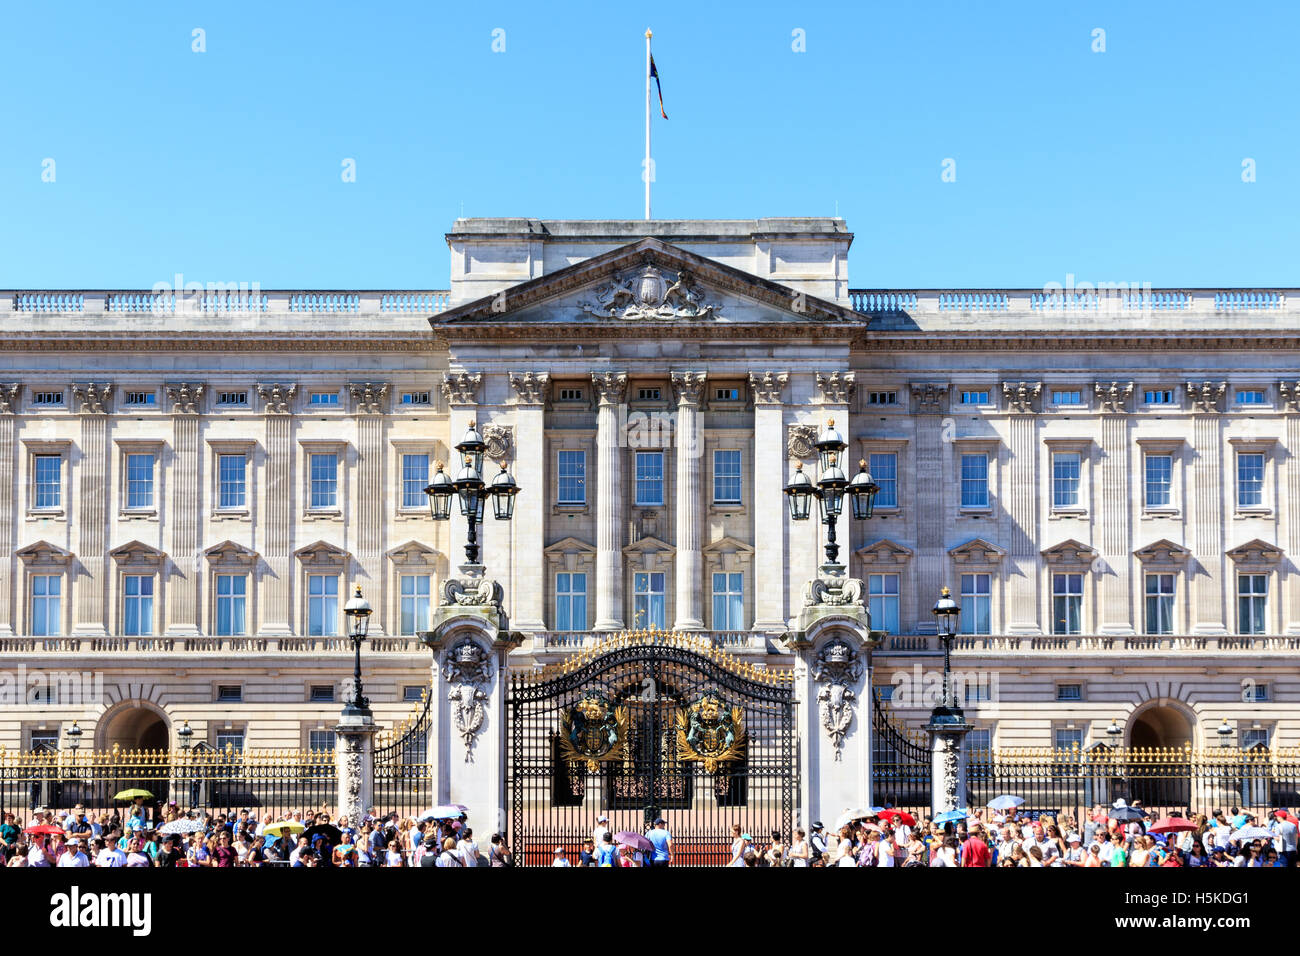 Londres, Reino Unido - 19 de julio de 2016 - El Palacio de Buckingham en Londres con una multitud de turistas fuera en un día despejado Foto de stock